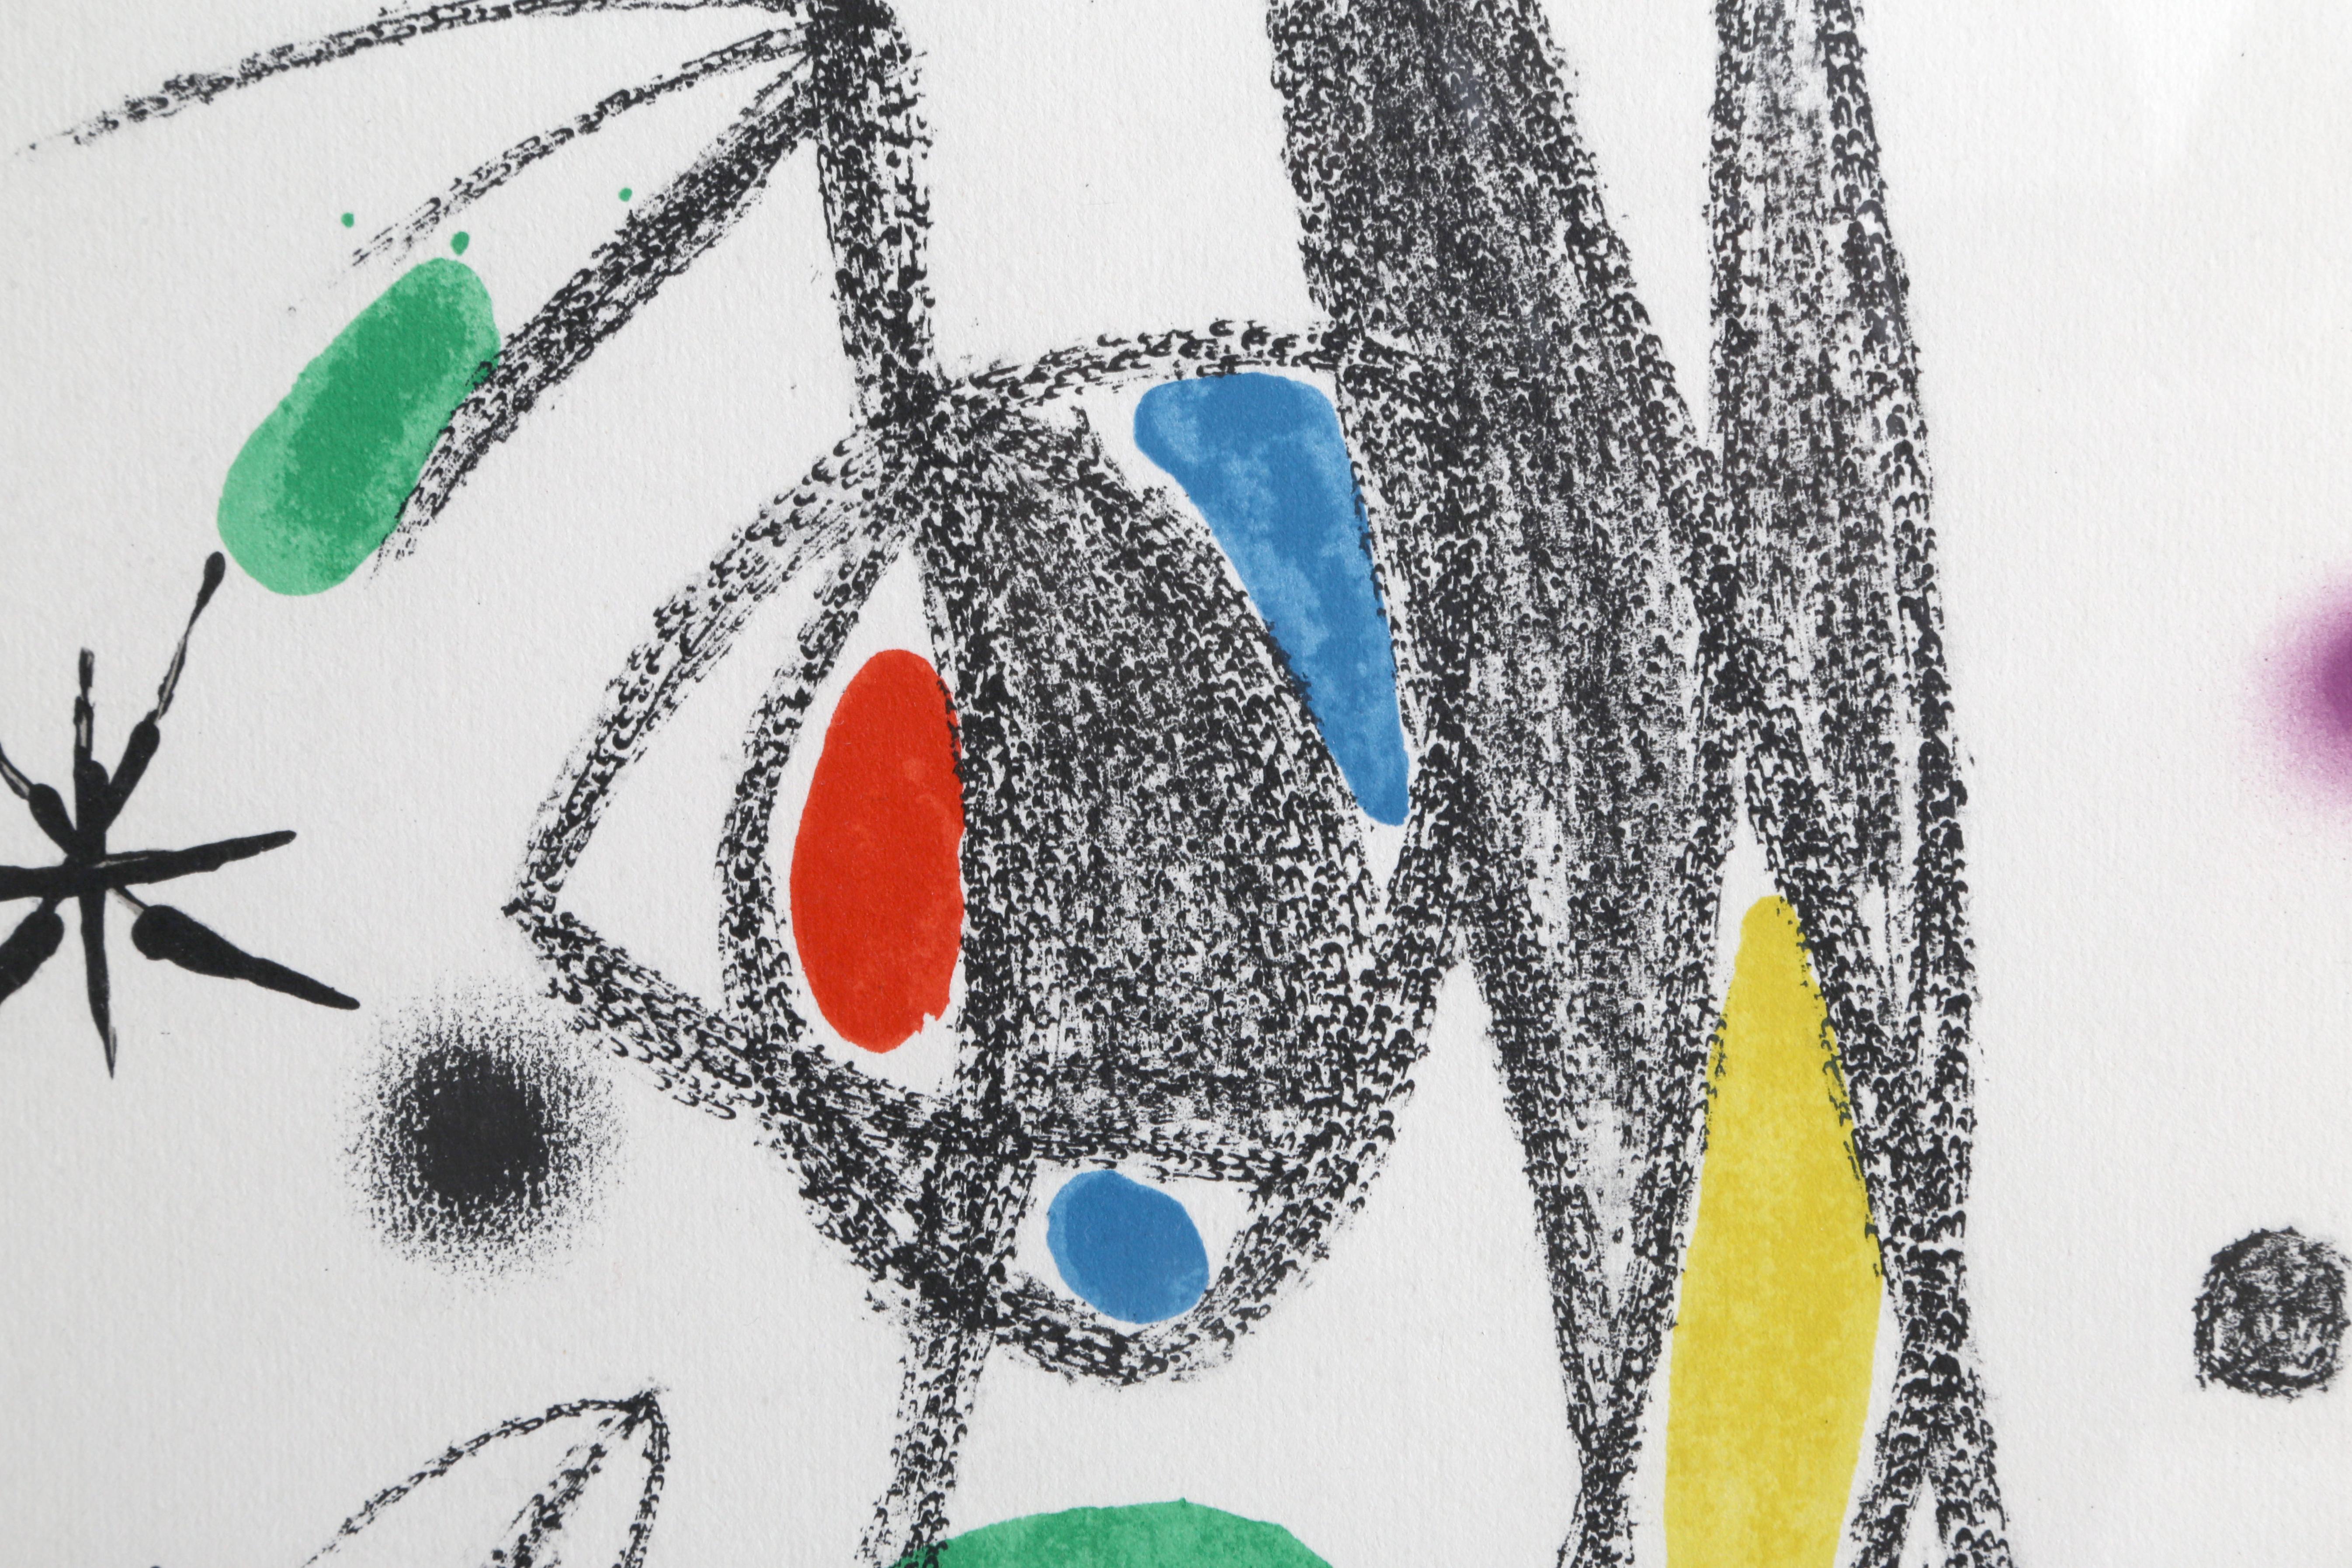 Künstler: Joan Miro, Spanier (1893 - 1983)
Titel: Maravillas con Variaciones Acrosticas en el jardin de Miro (Nummer 16)
Jahr: 1975
Medium: Lithographie, in der Platte signiert
Auflage: 1500
Größe: 19,5 Zoll x 14 Zoll (49,53 cm x 35,56